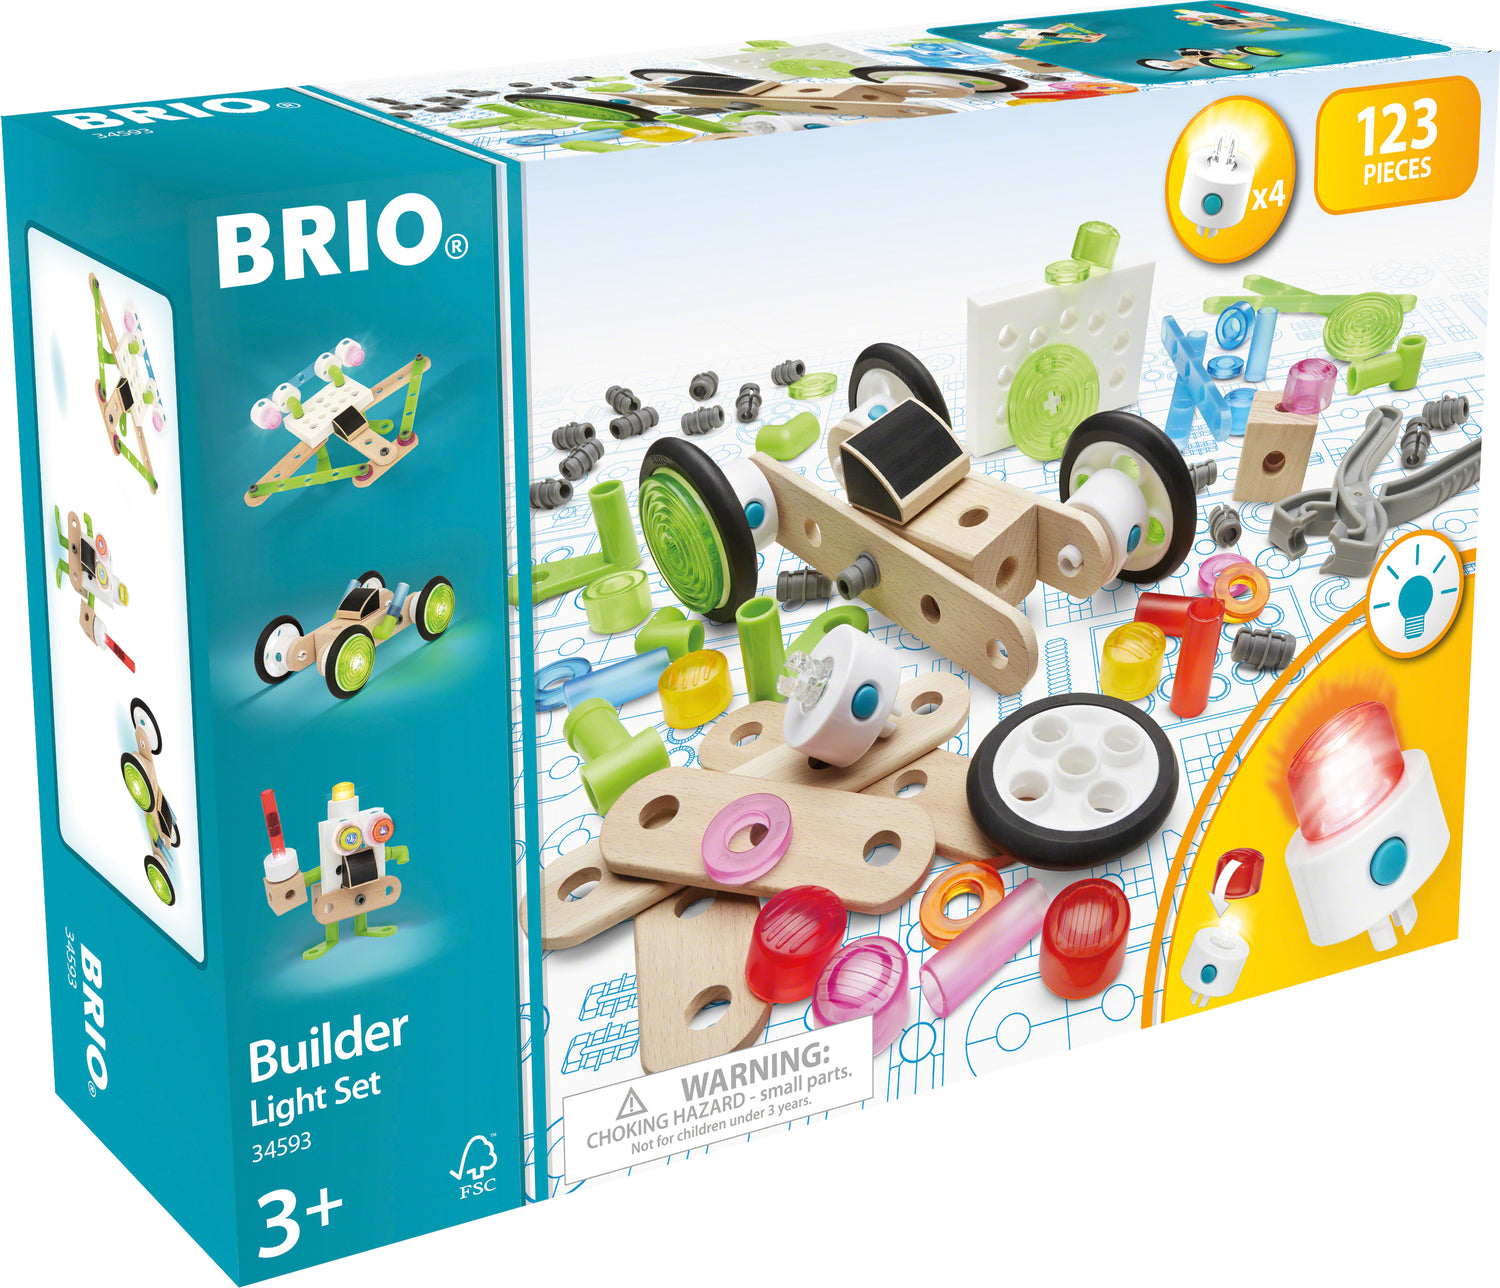 BRIO Builder Light Set